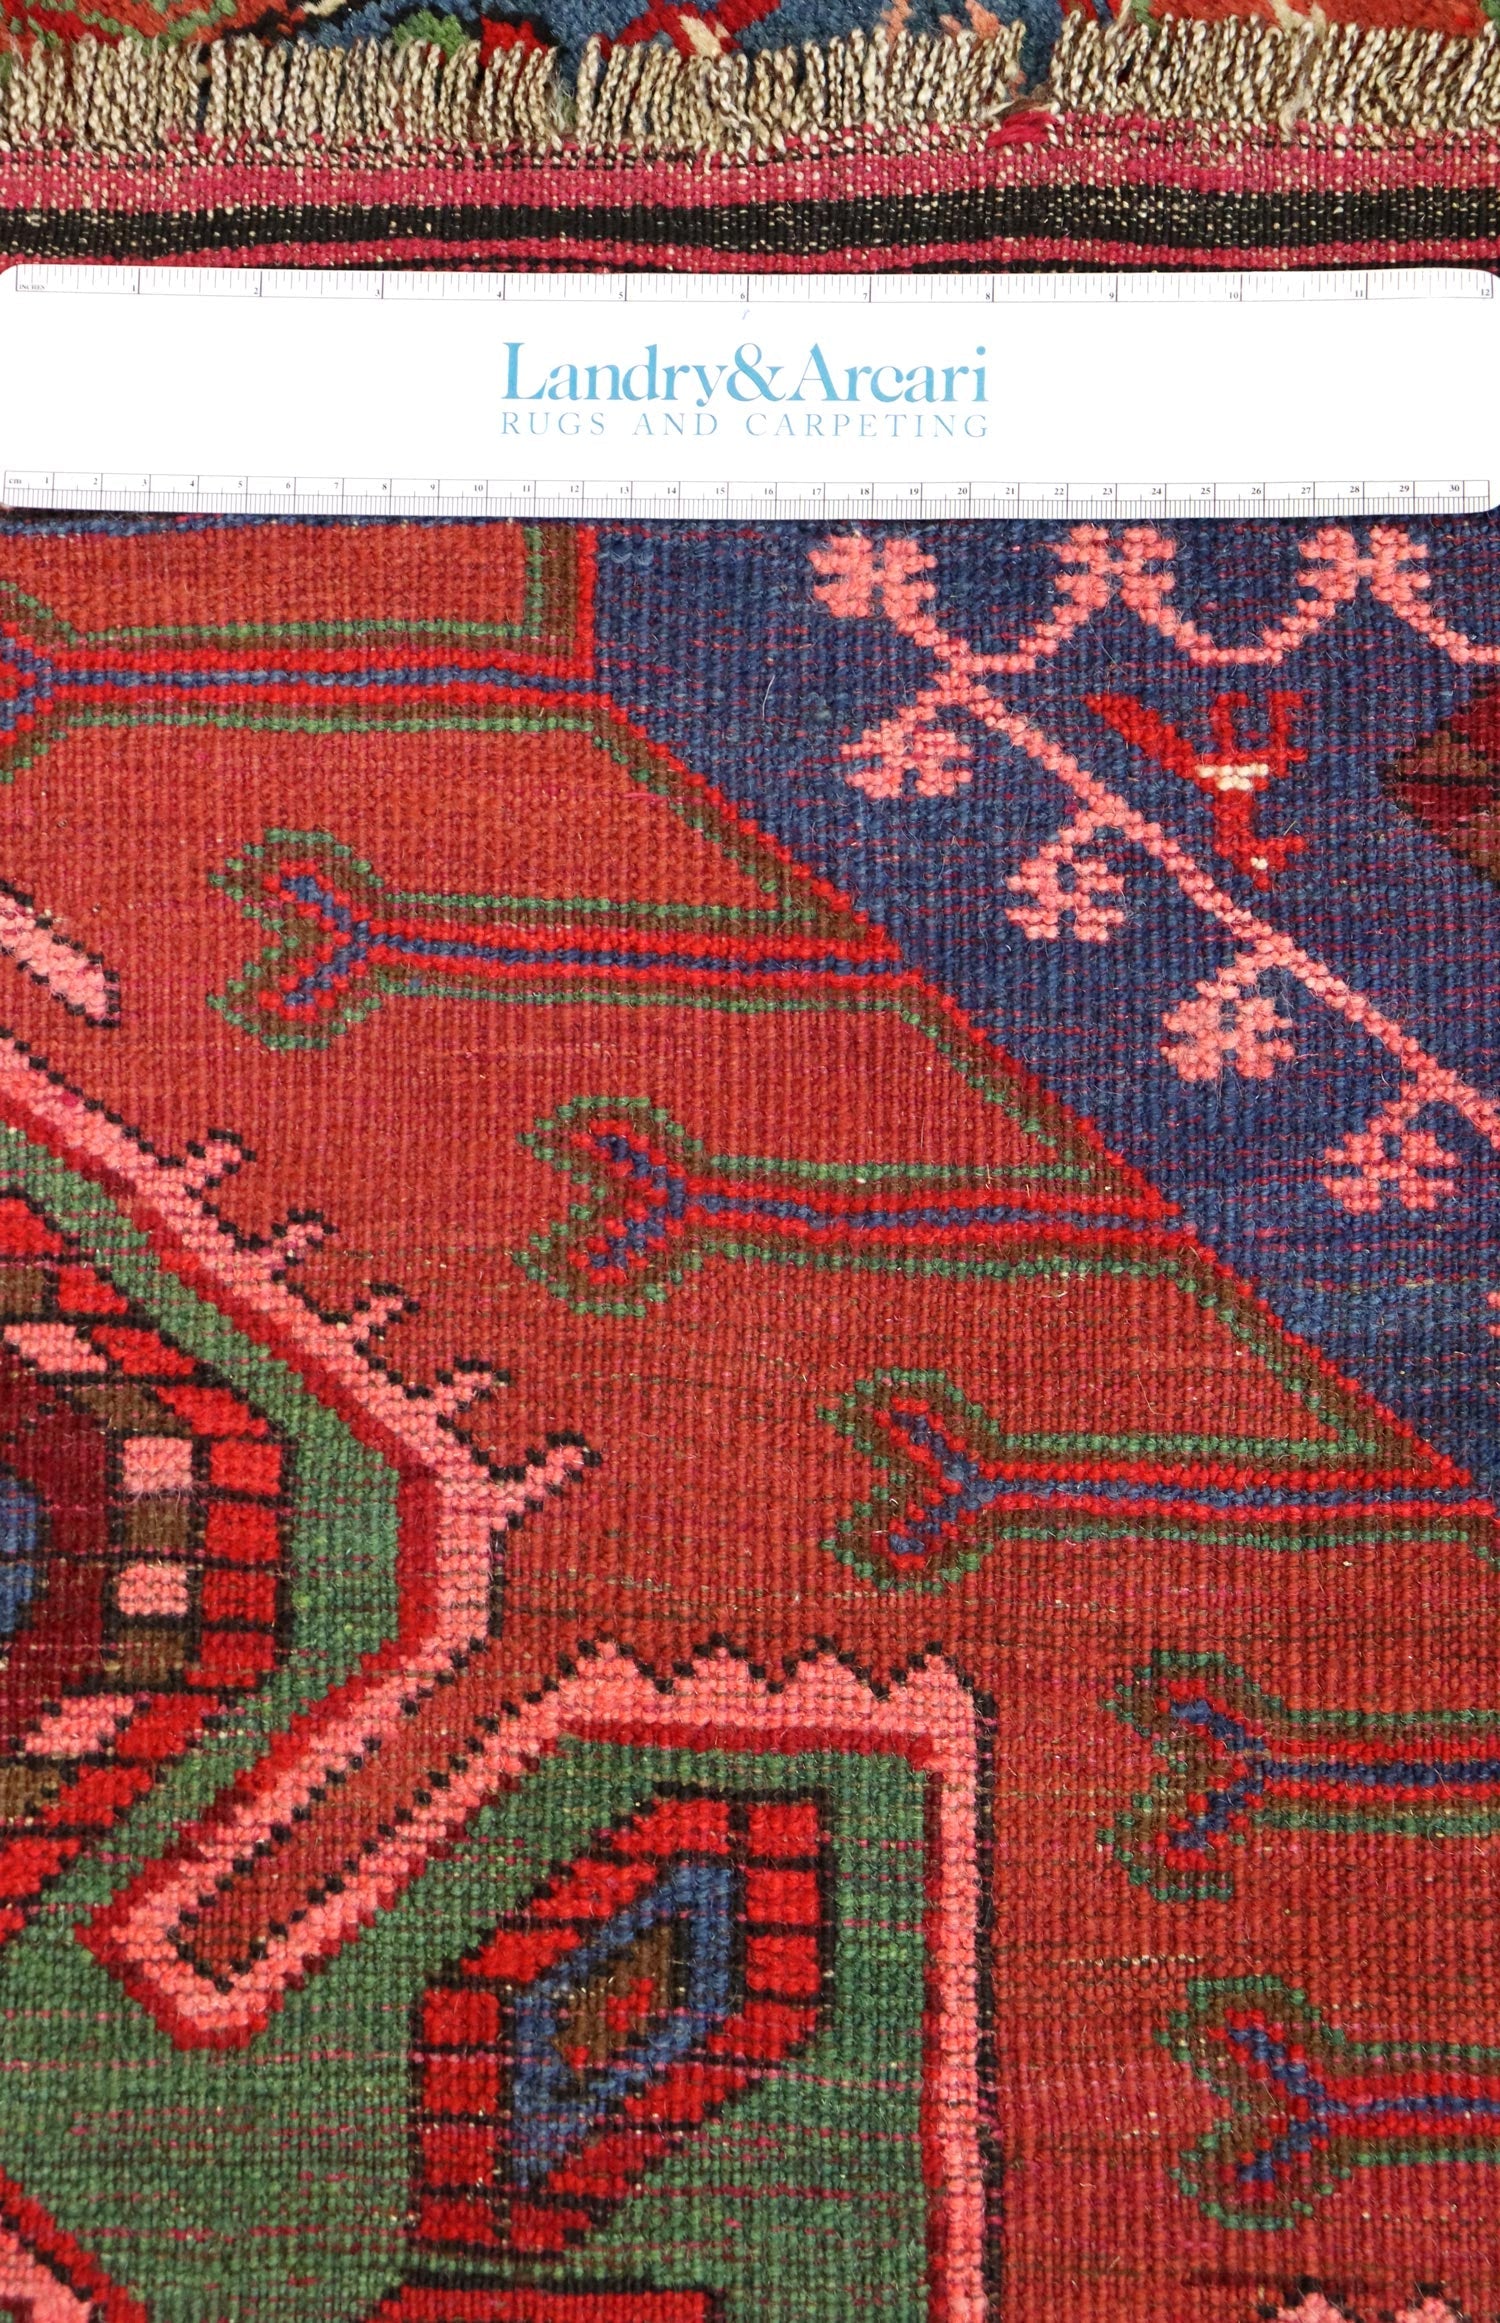 Antique Karabagh Handwoven Tribal Rug, J65236